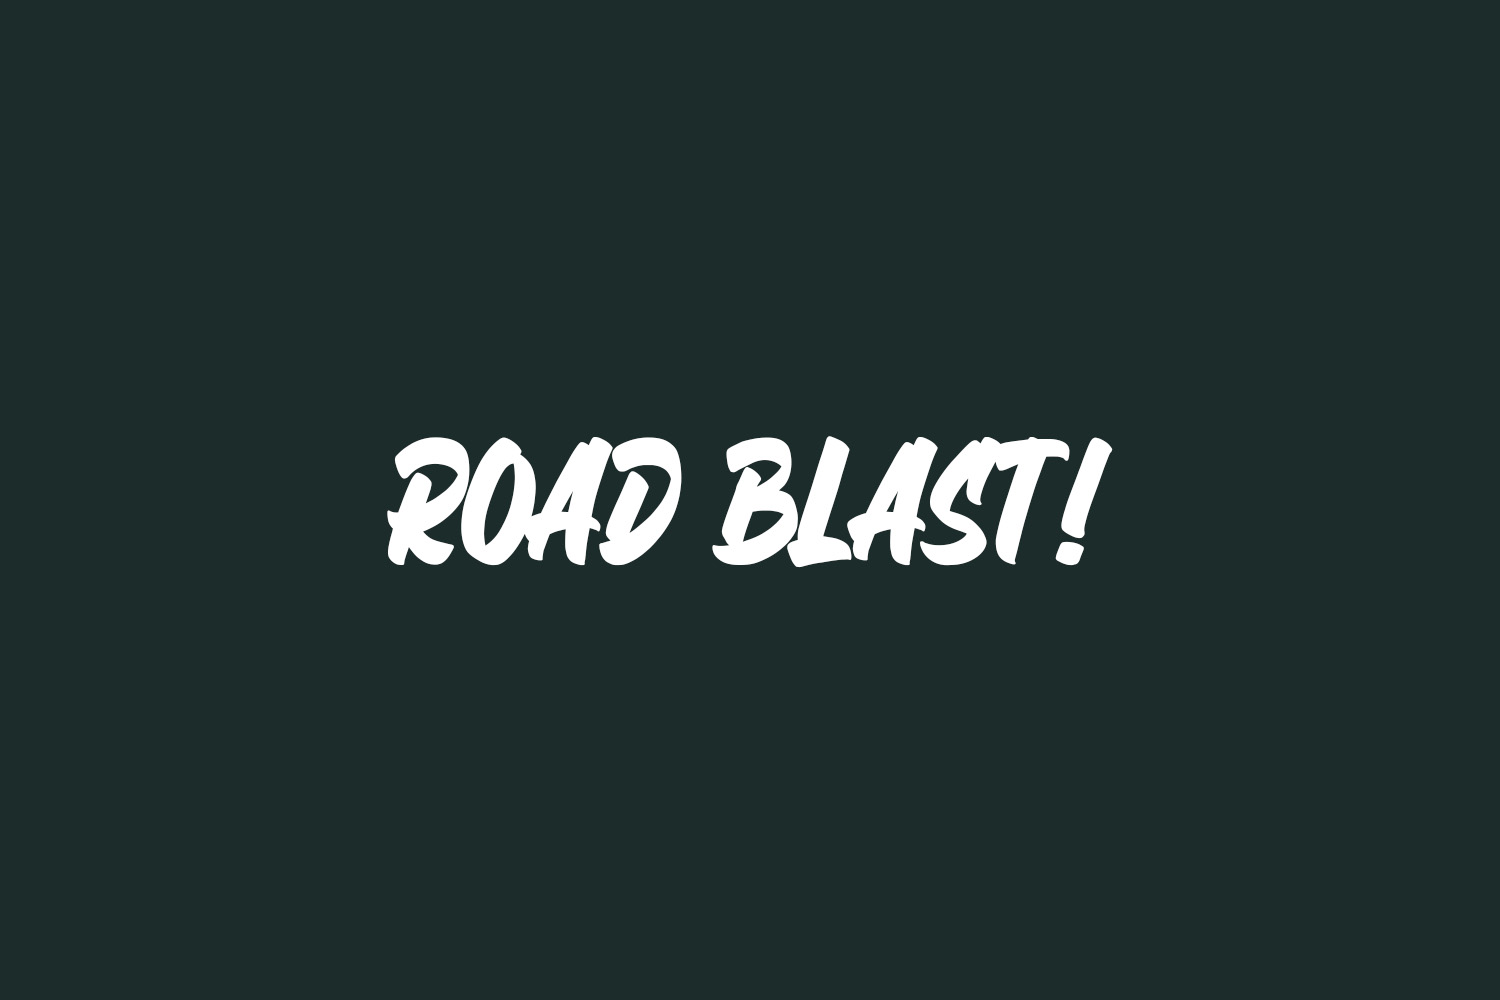 Road Blast! Free Font